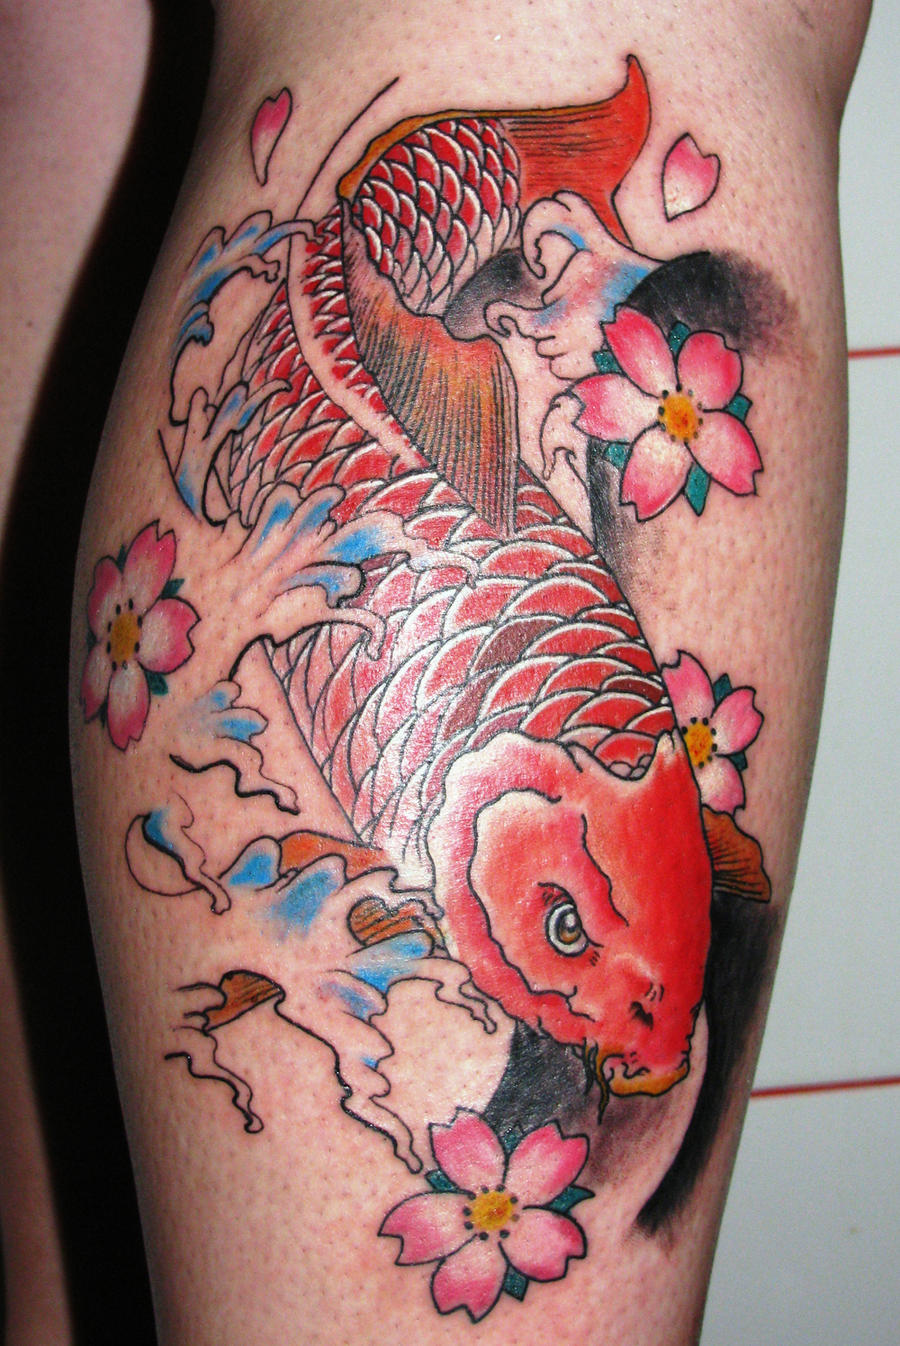 ... body modification tattoos 2012 2015 dmtattoo koi fish tattoo load all